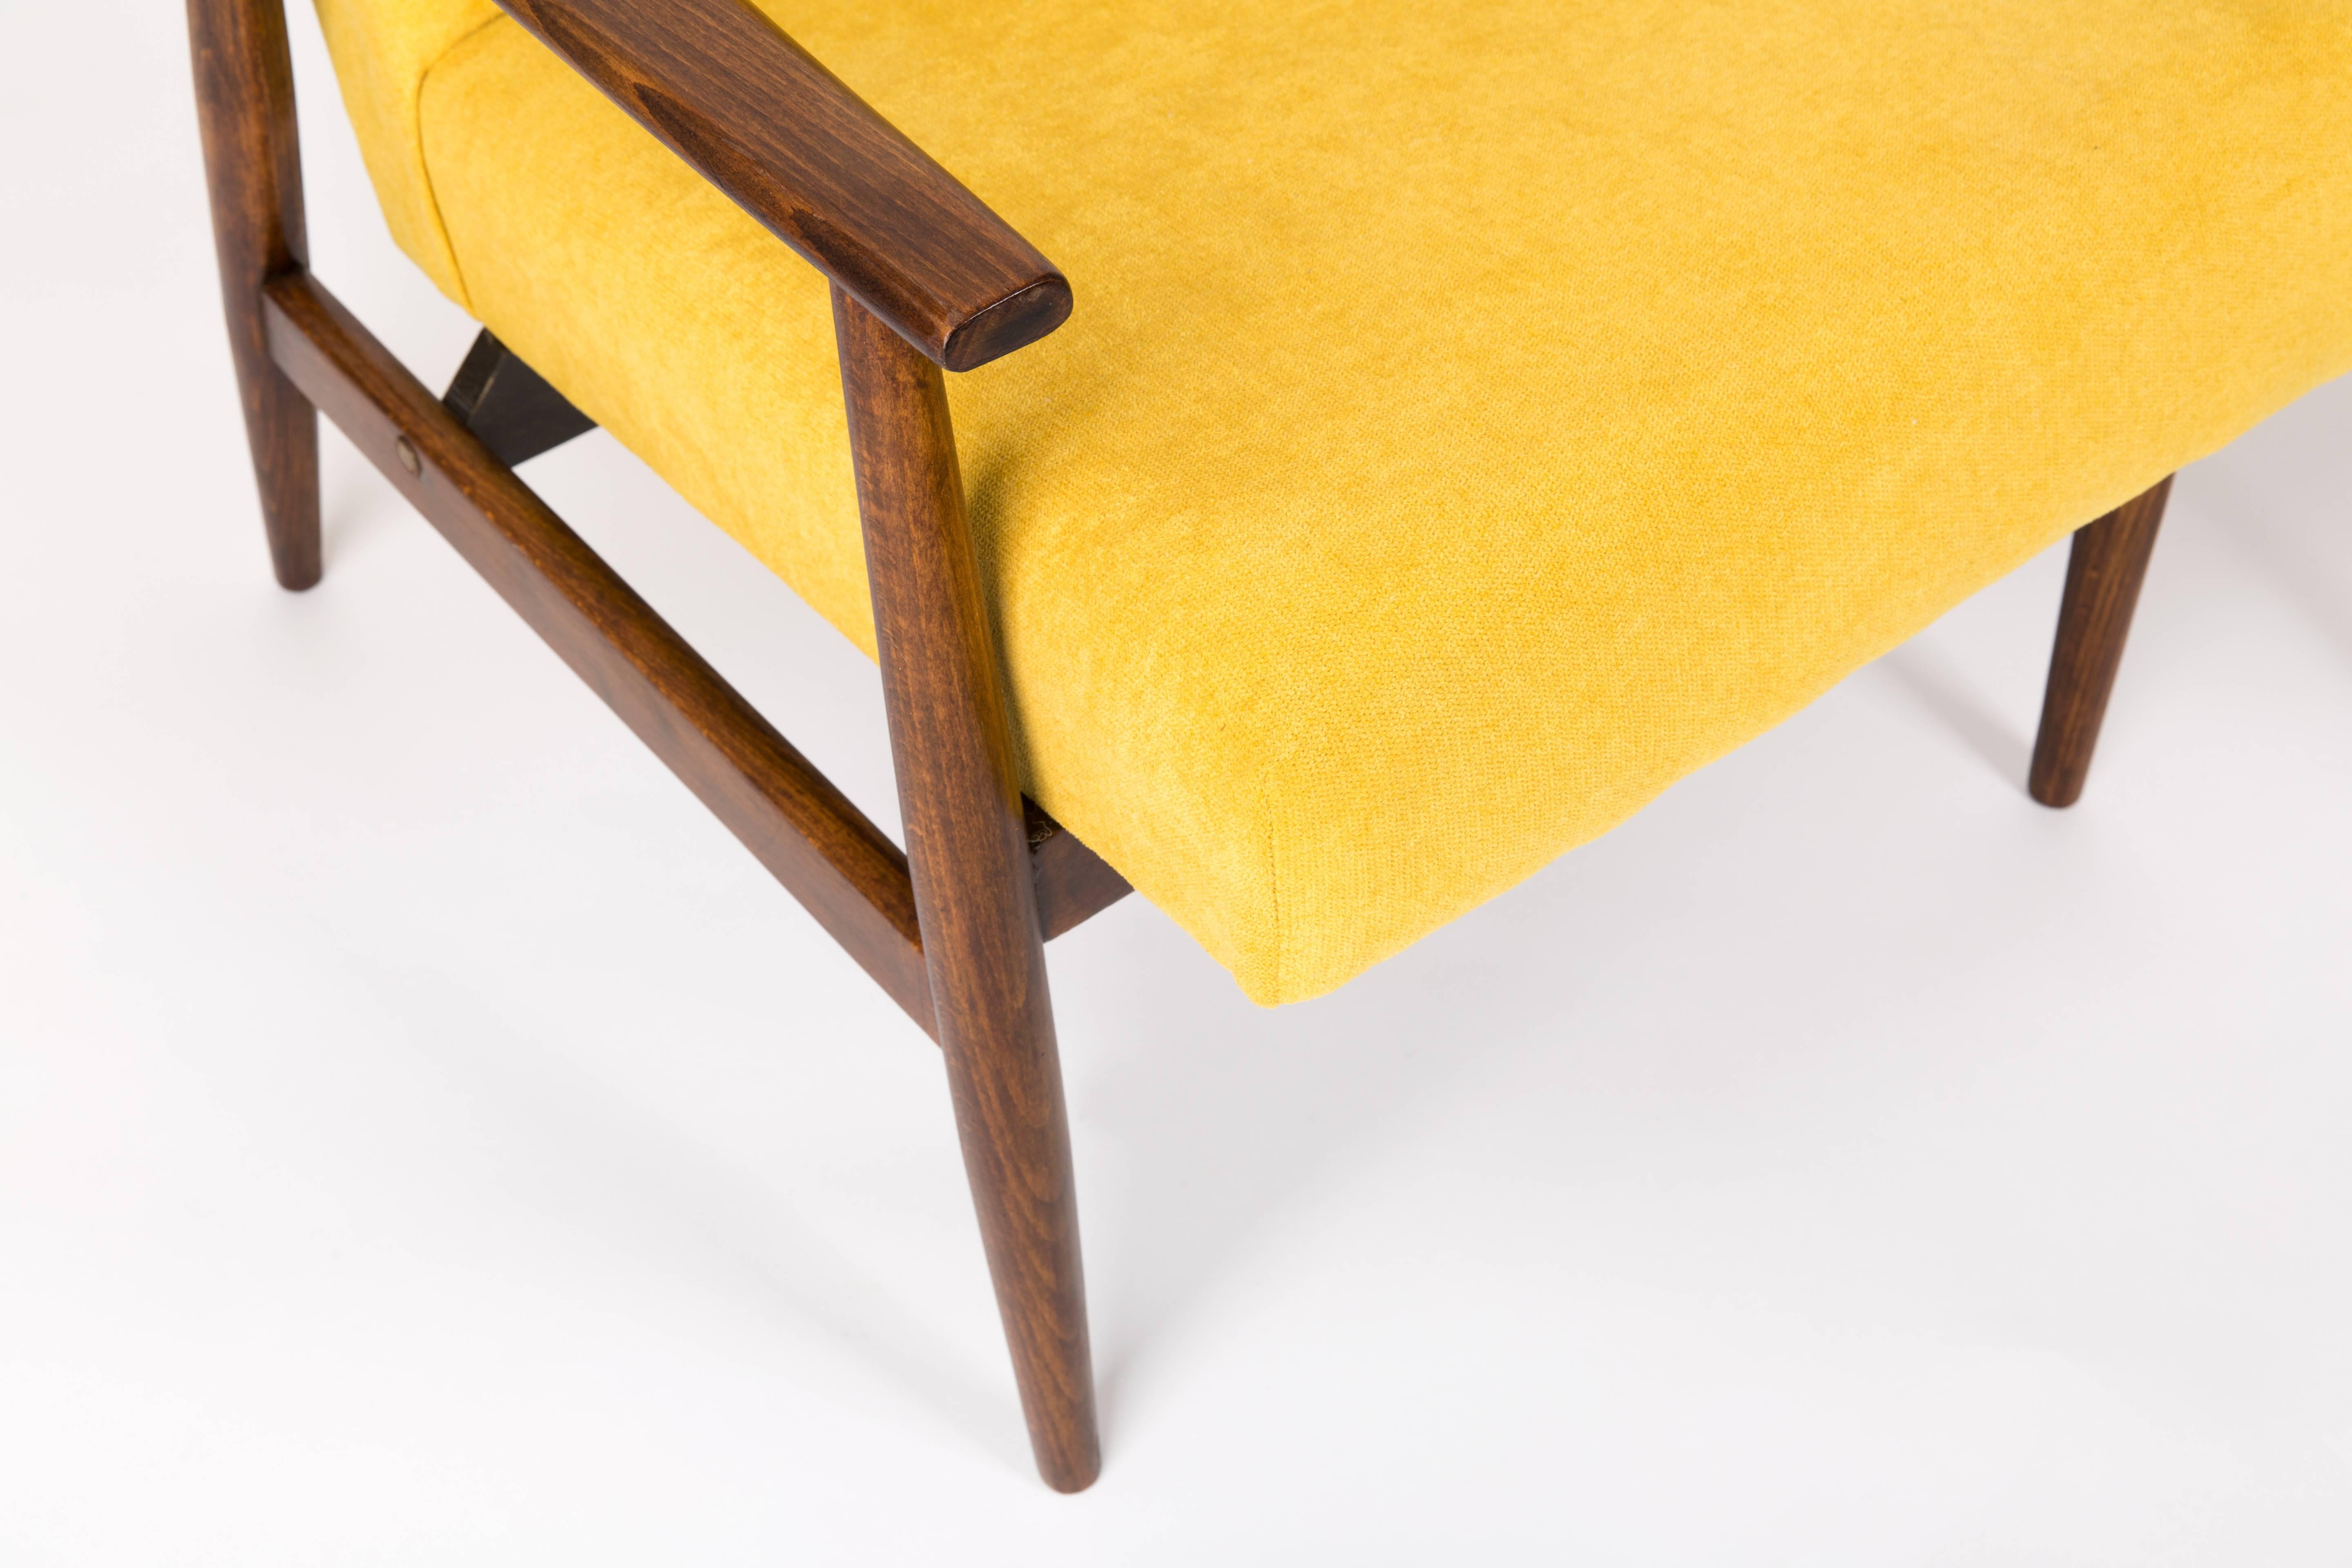 Un beau fauteuil restauré, conçu par Henryk Lis. Meubles après une rénovation complète de la menuiserie et de la tapisserie. Le tissu, qui est recouvert d'un dossier et d'une assise, est un revêtement en velours de haute qualité. Les fauteuils